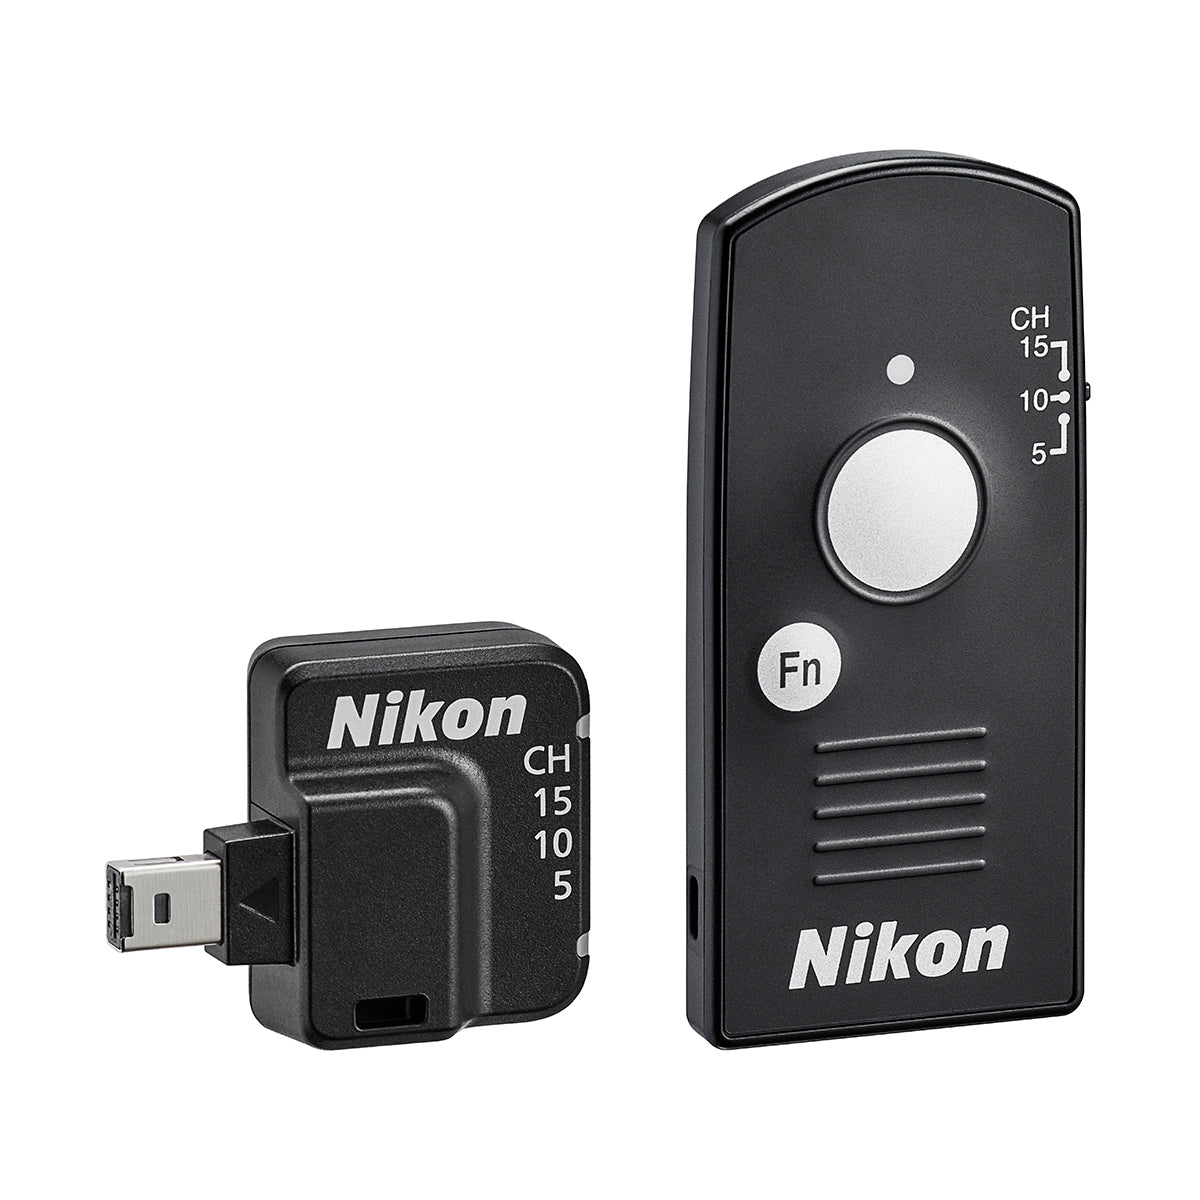 Nikon WR-R11b/WR-T10 Remote Controller Set